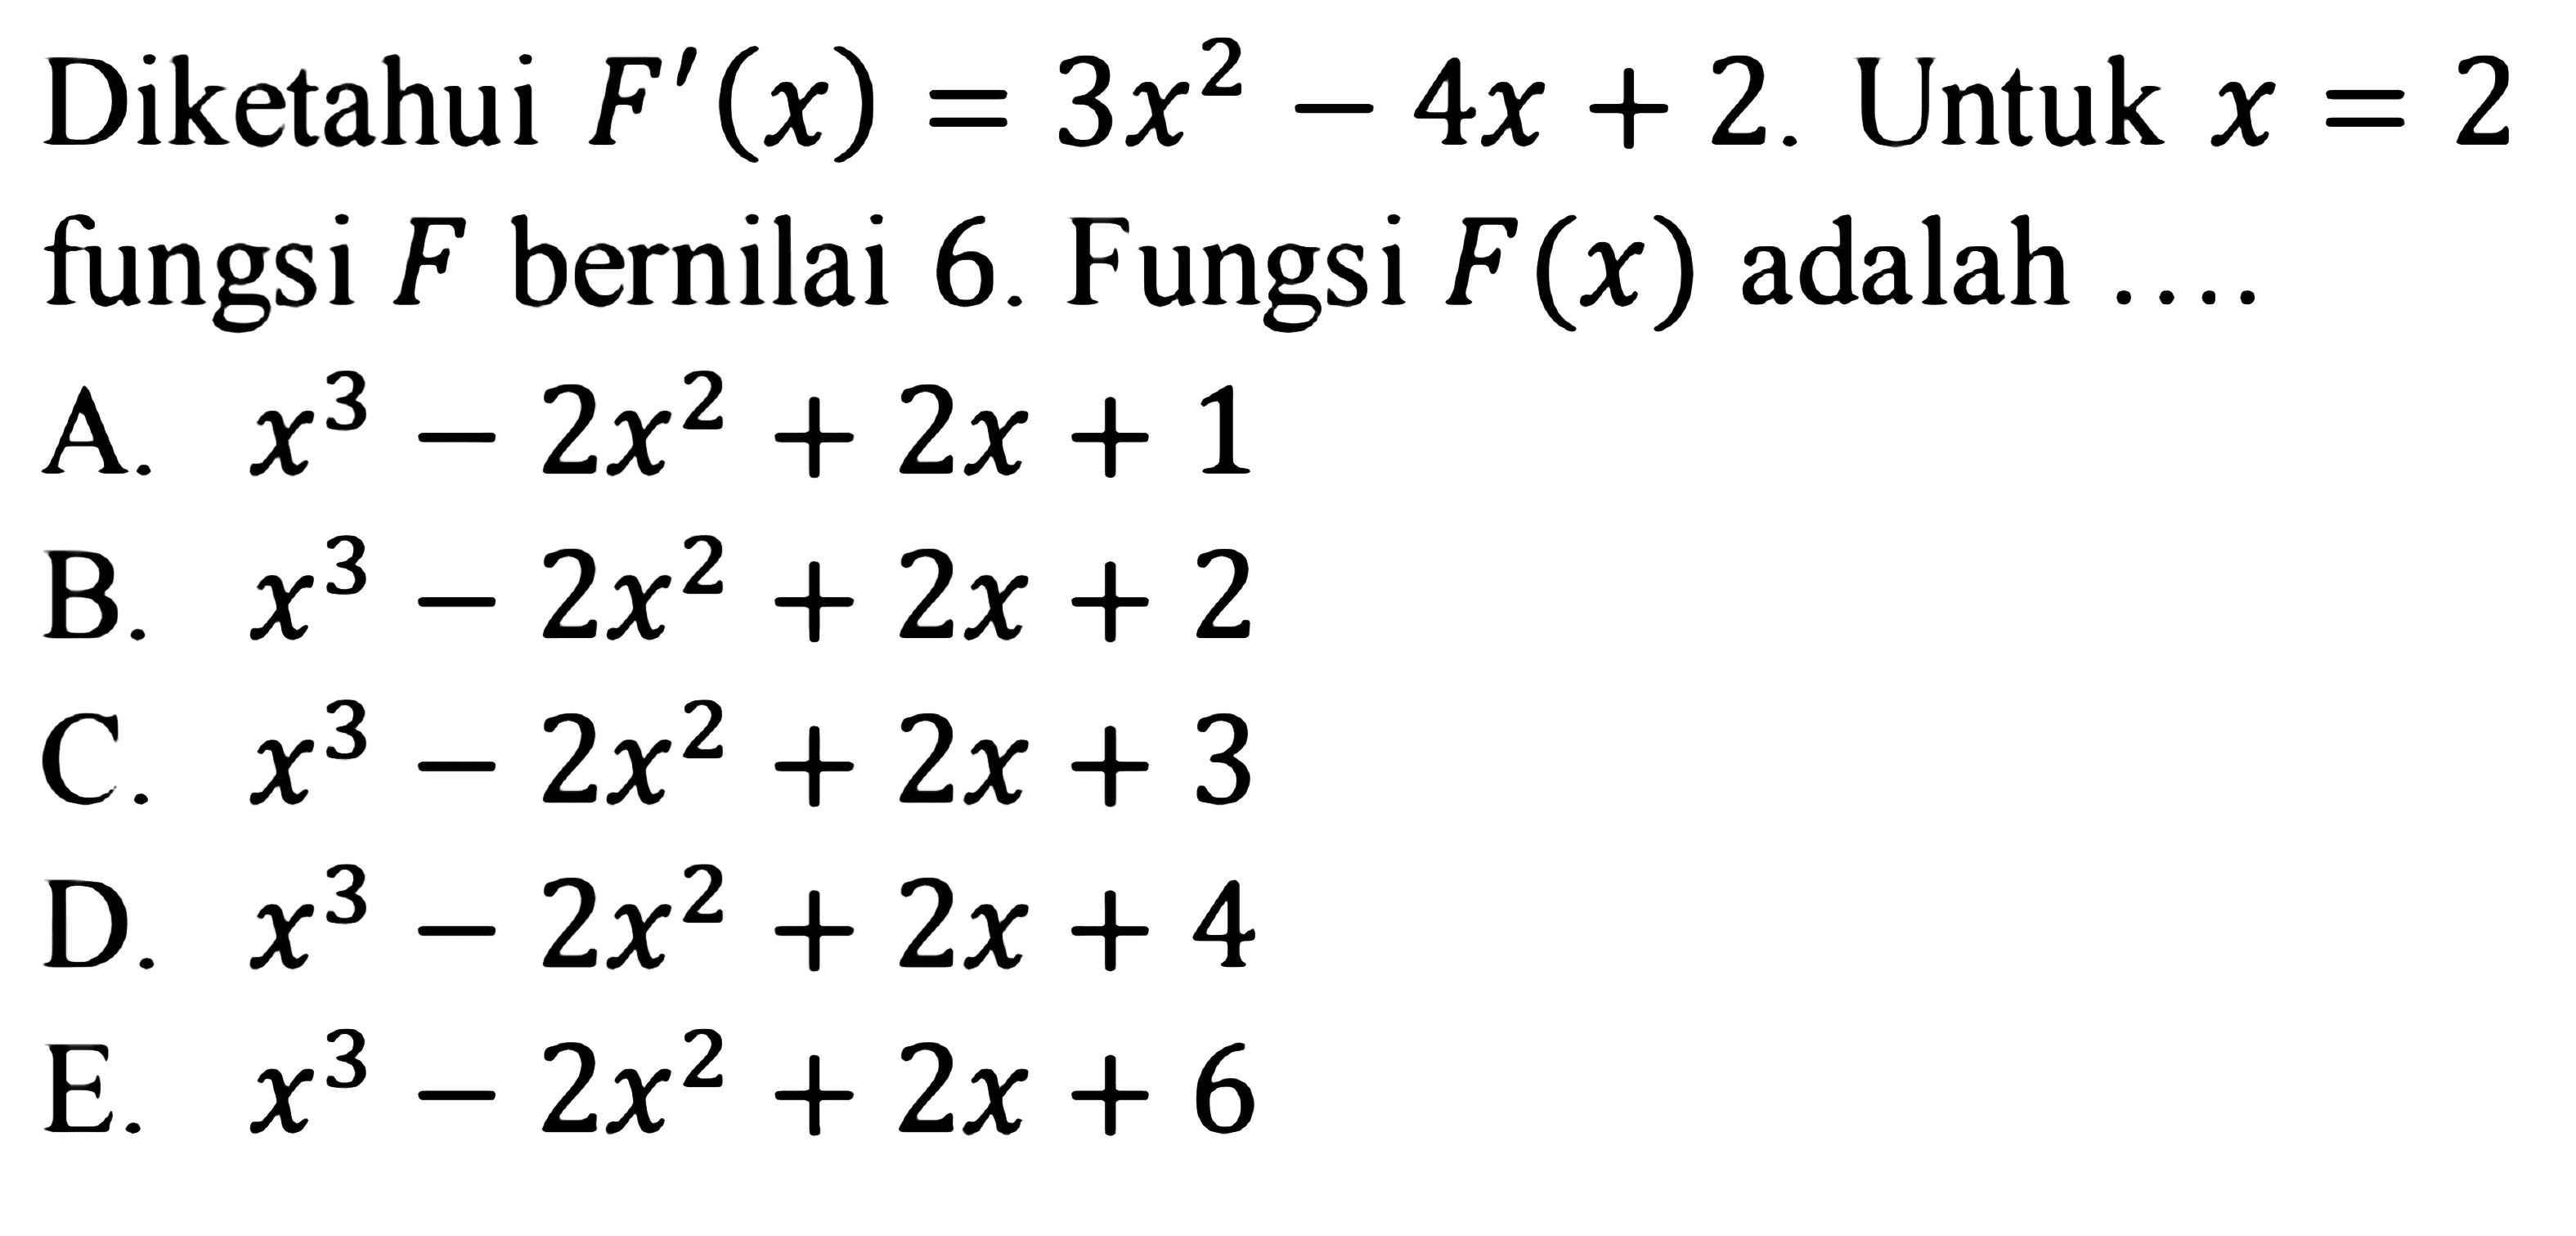 Diketahui  F'(x)=3x^2-4x+2 . Untuk  x=2  fungsi  F  bernilai 6. Fungsi  F(x)  adalah ....